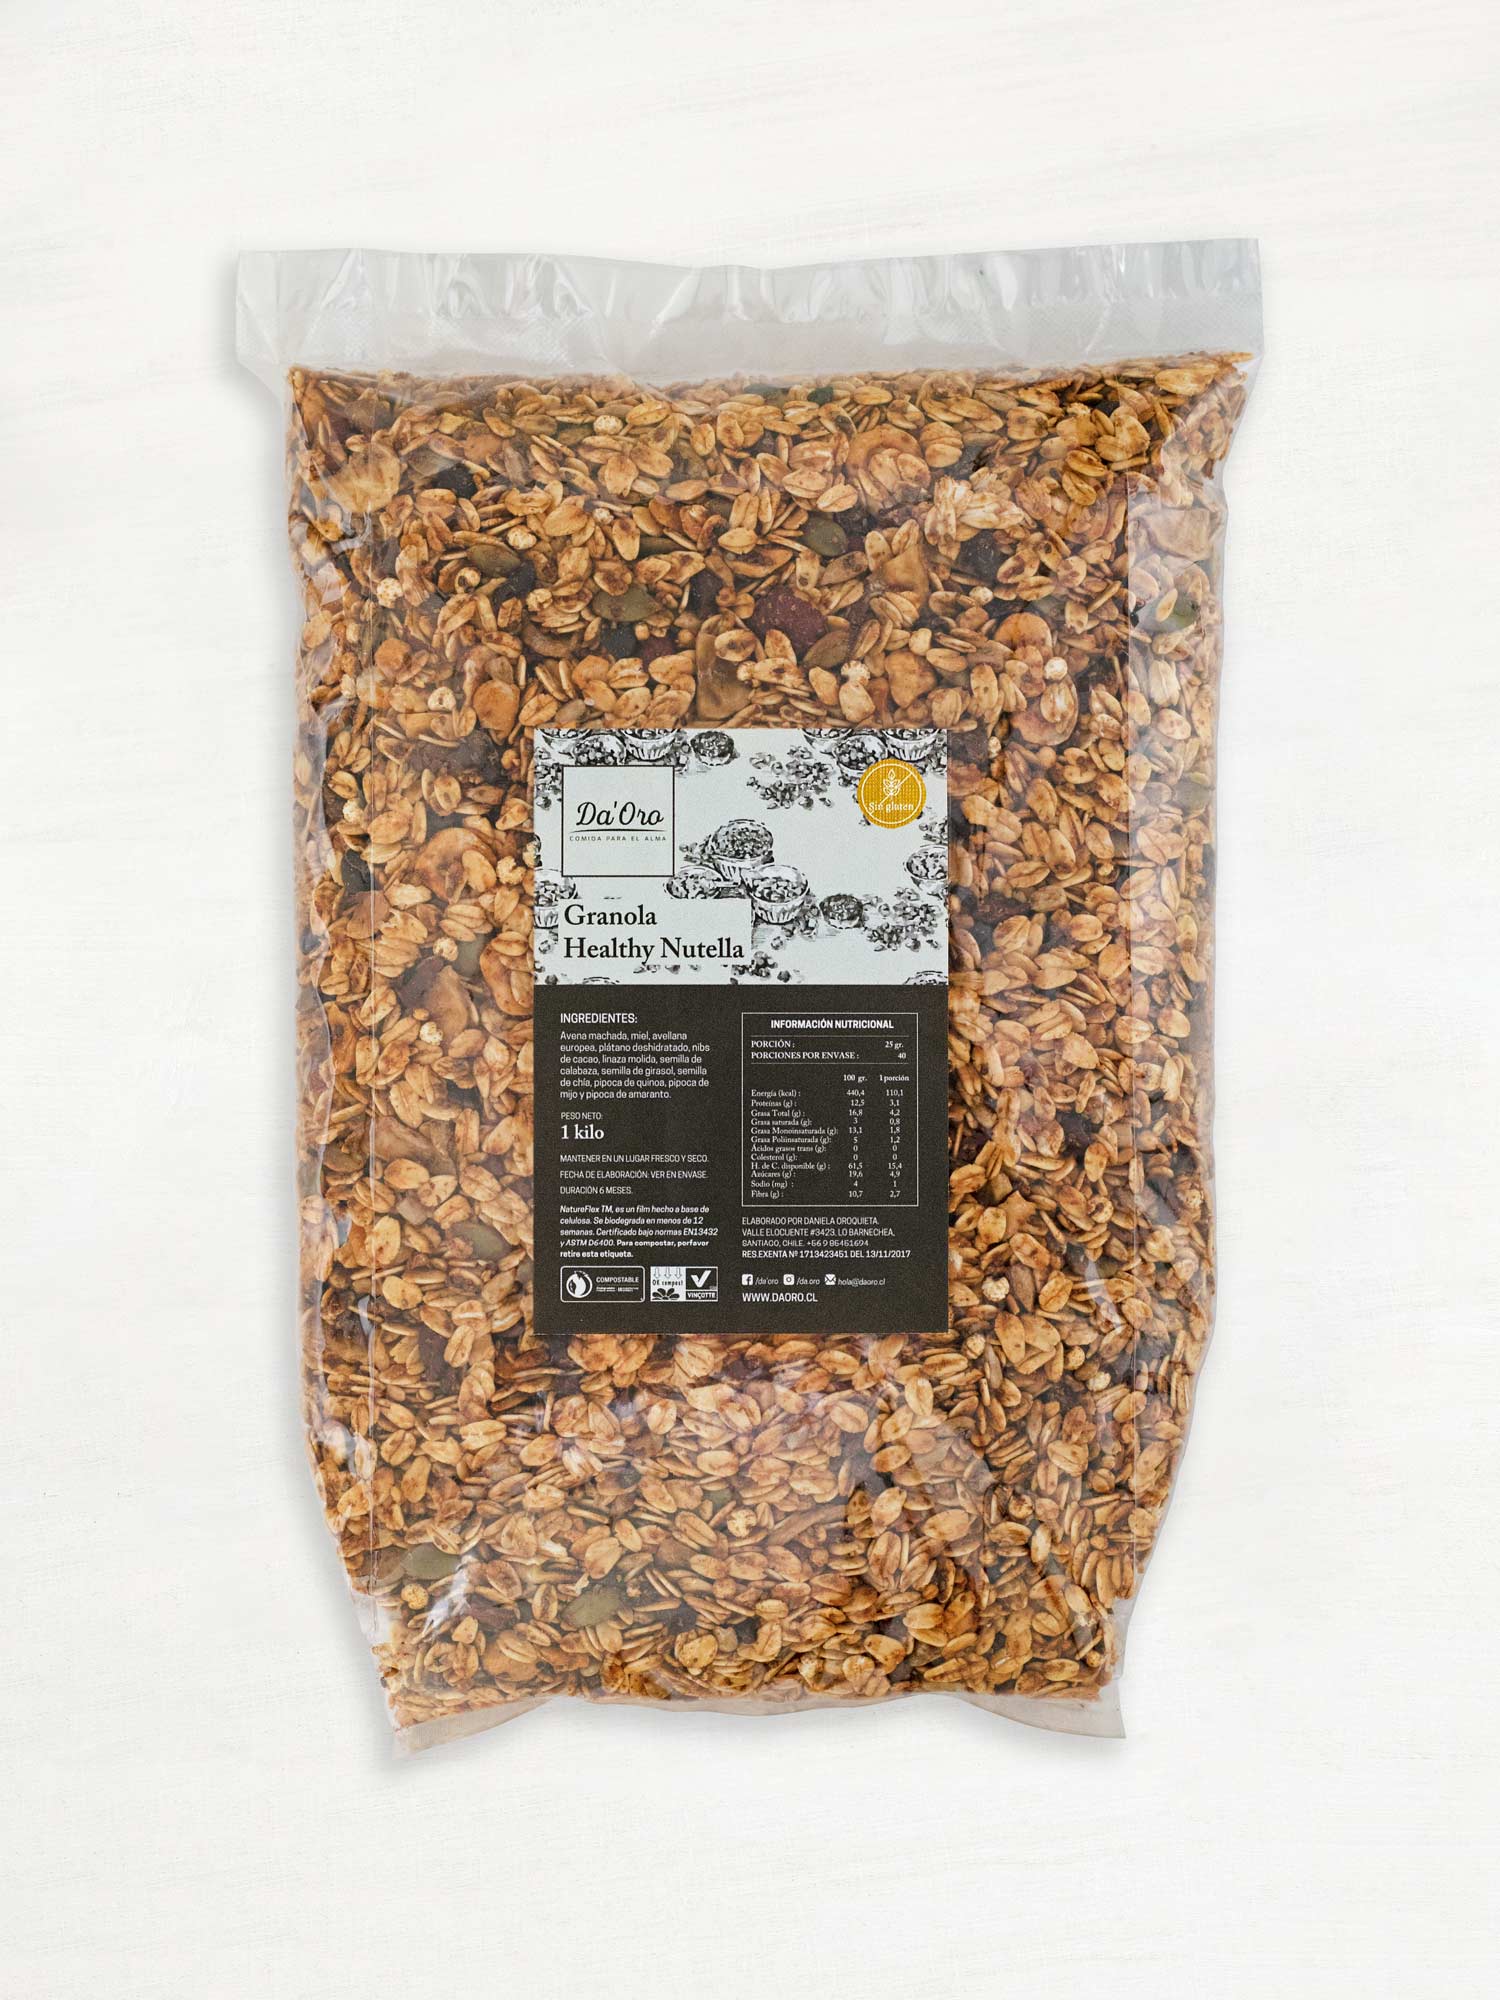 Bolsa de granola sin gluten healthy nutella 475g marca Da’Oro